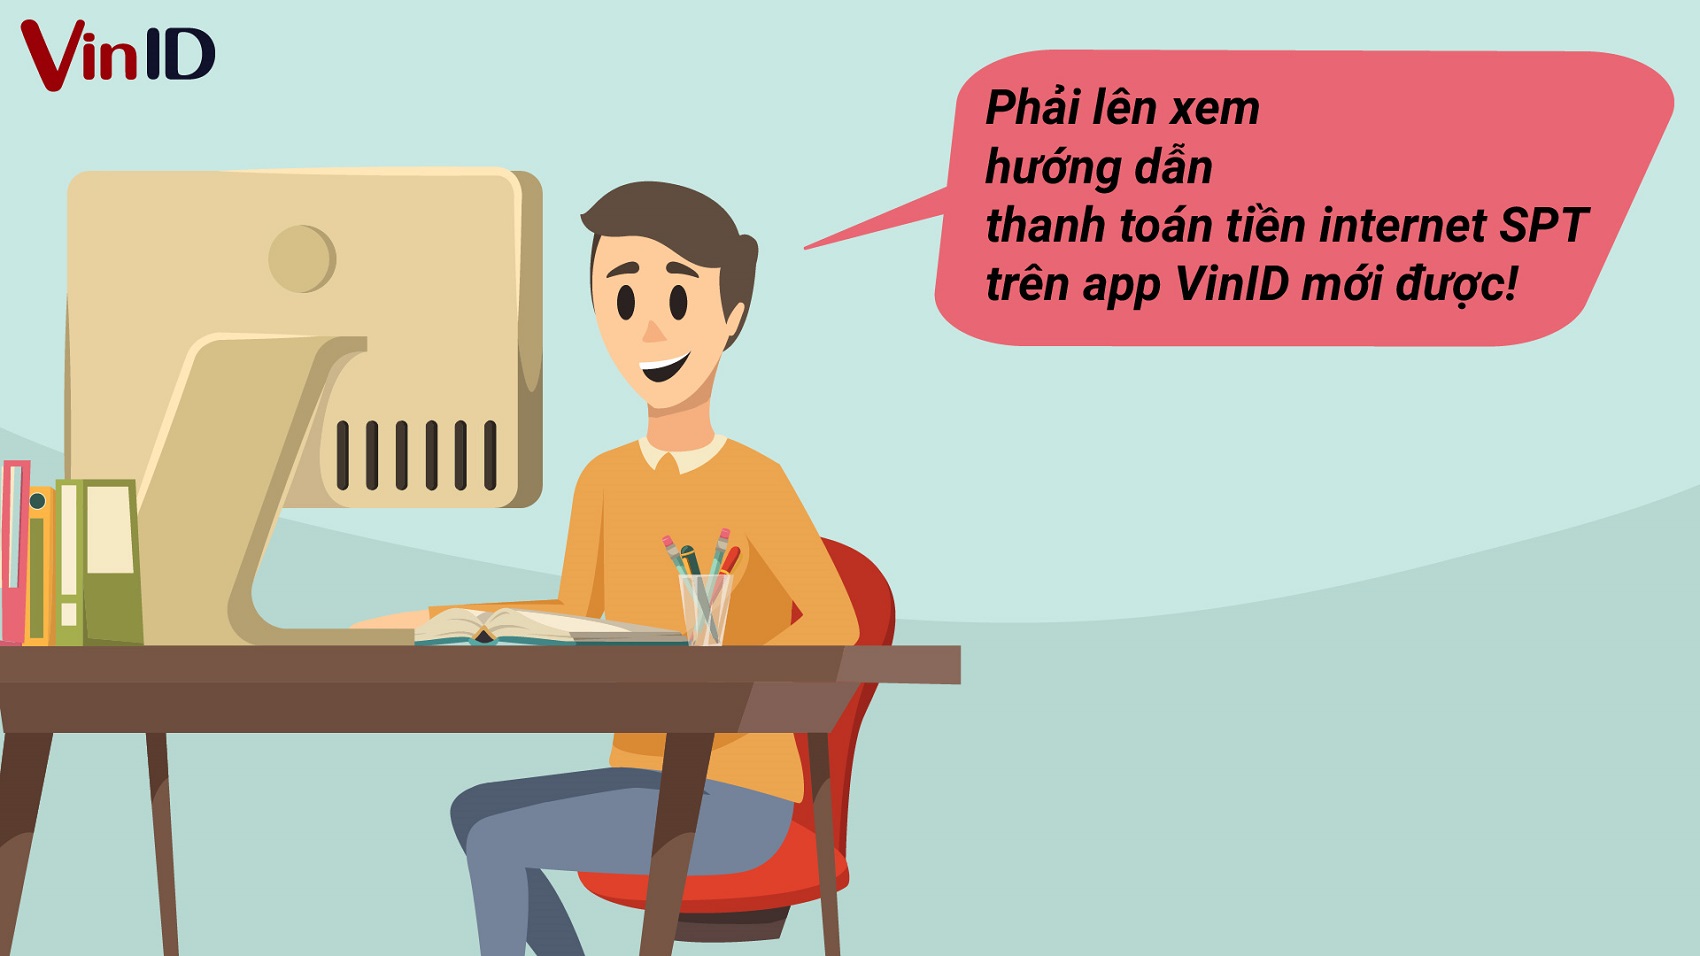 Hướng dẫn thanh toán tiền internet SPT trên app VinID